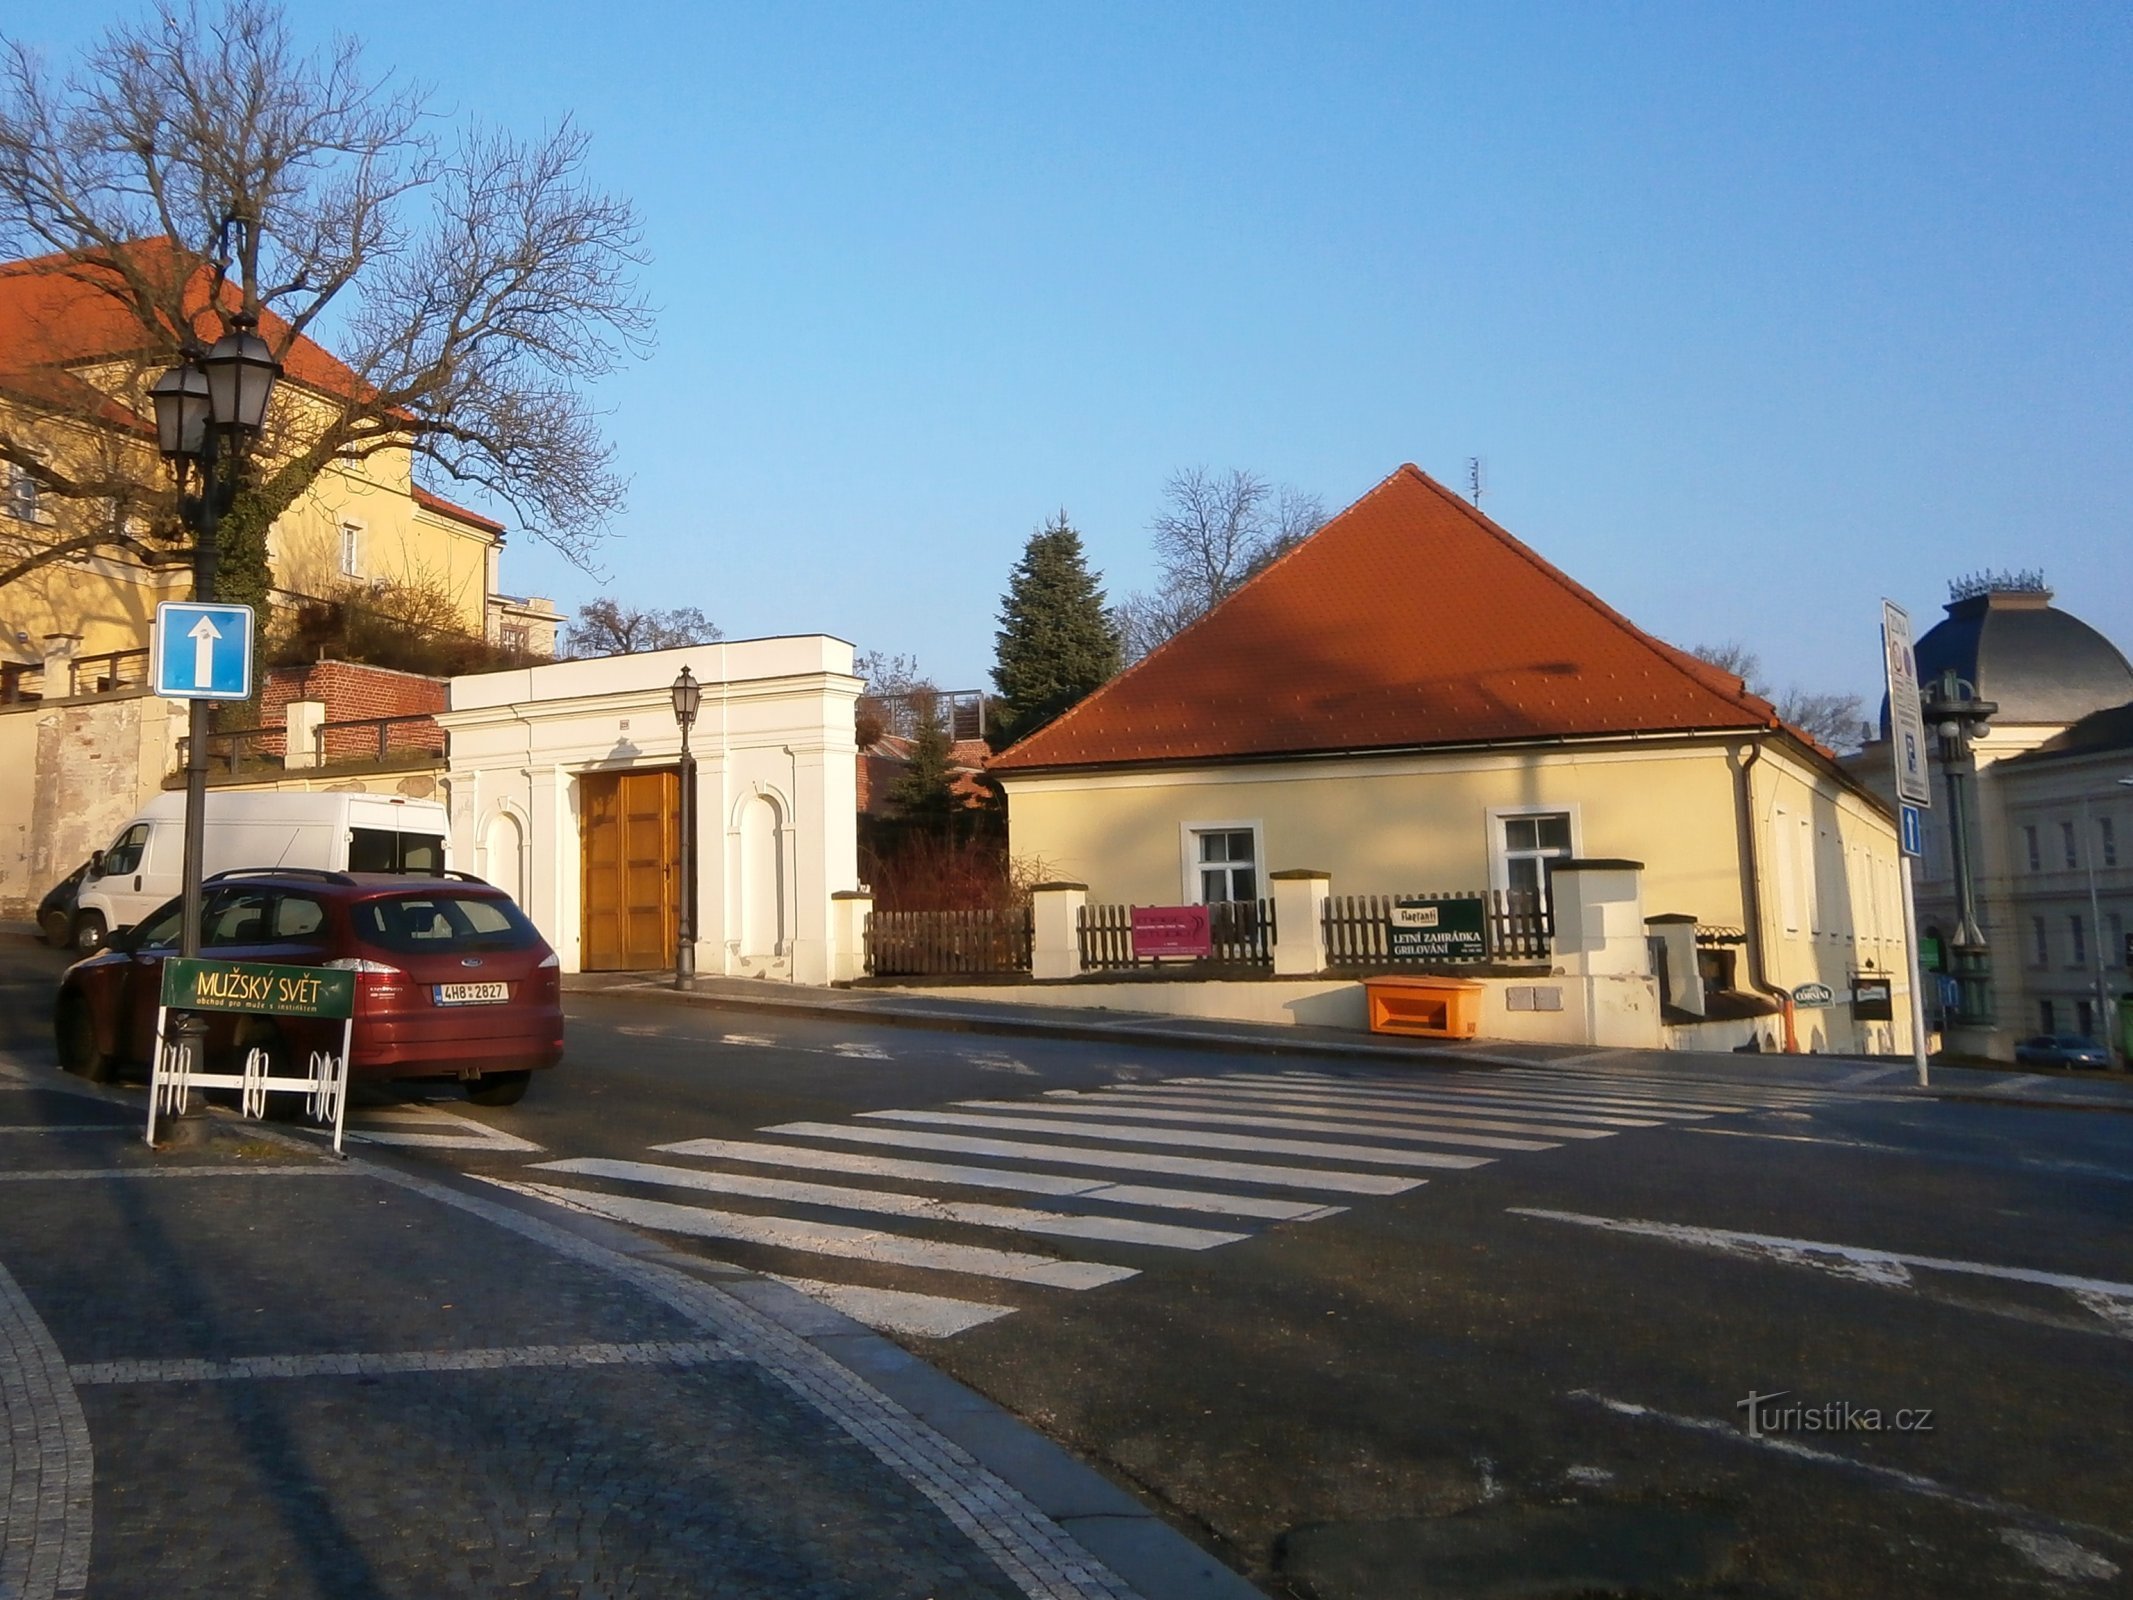 工程局（Hradec Králové，16.1.2015 年 XNUMX 月 XNUMX 日）